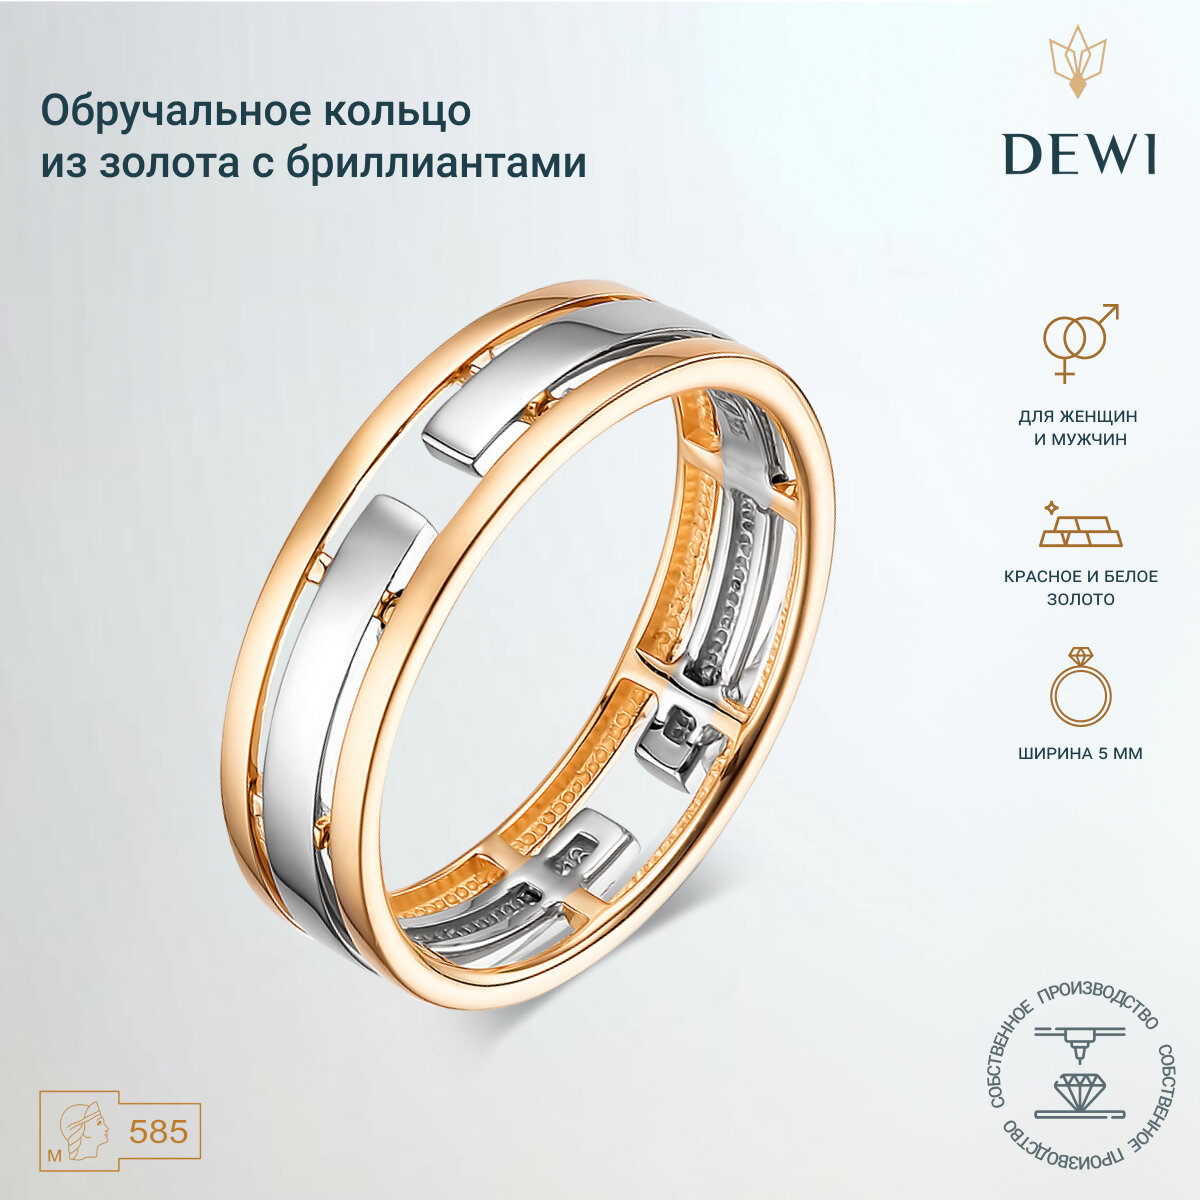 Кольцо обручальное Dewi, красное, белое золото, 585 проба, родирование, размер 16, ширина 5 мм, серебряный, золотой